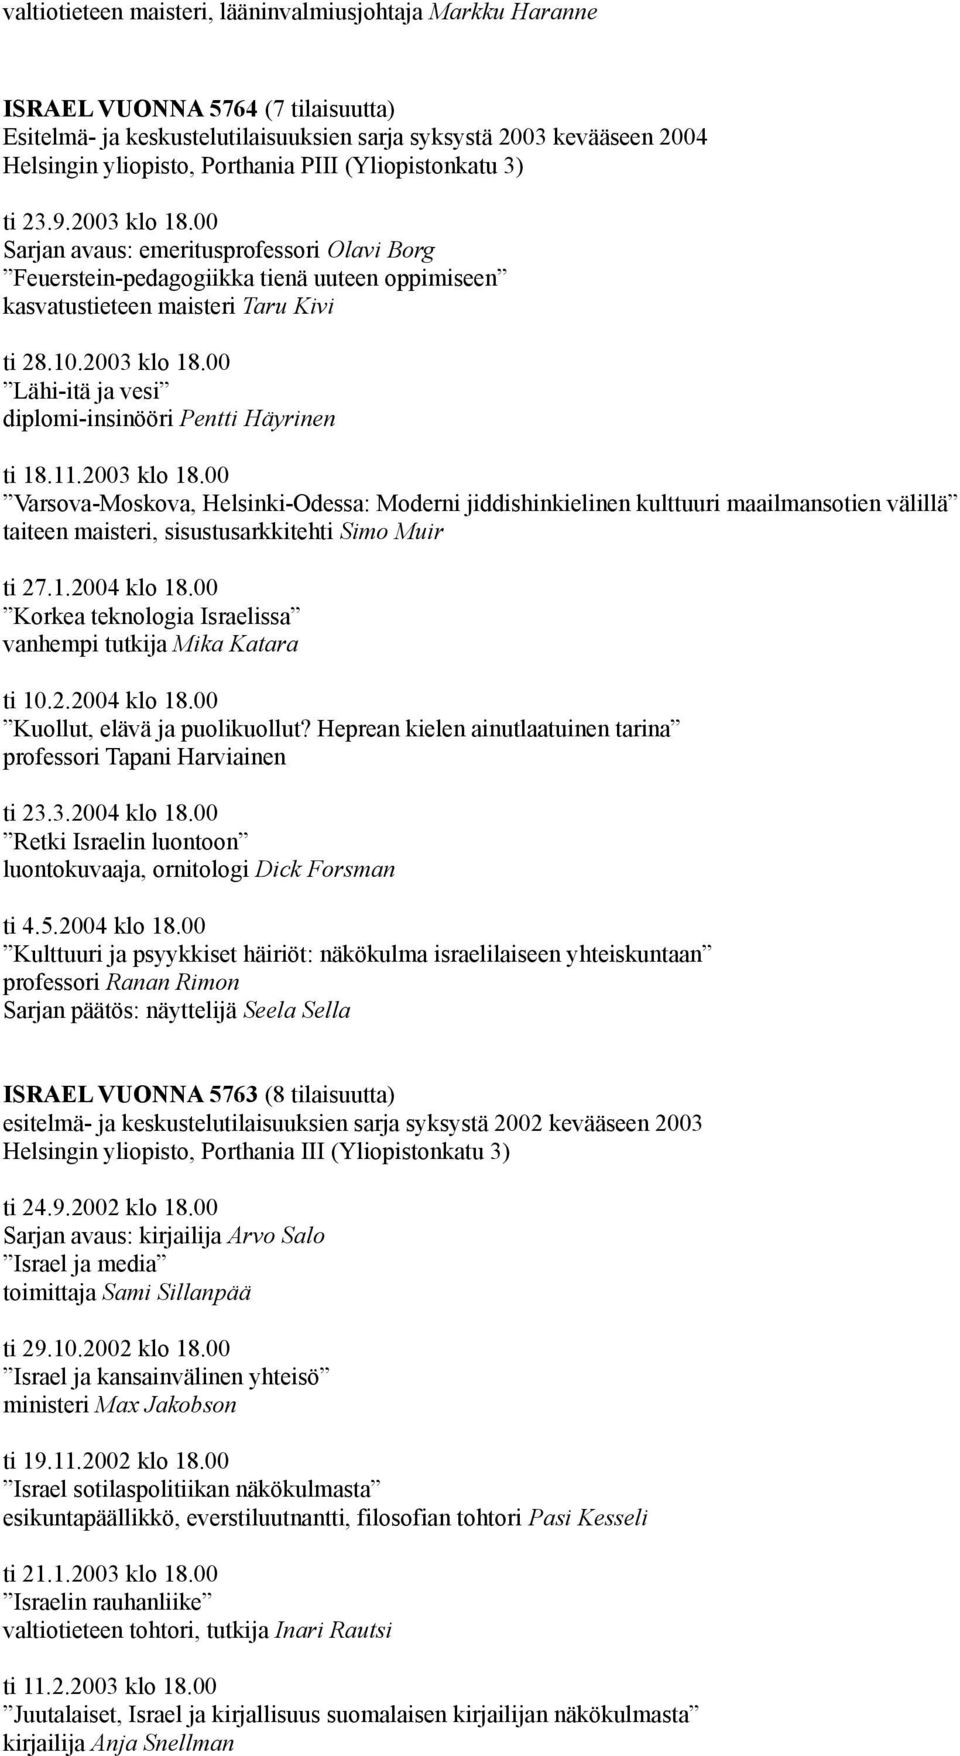 11.2003 klo 18.00 Varsova-Moskova, Helsinki-Odessa: Moderni jiddishinkielinen kulttuuri maailmansotien välillä taiteen maisteri, sisustusarkkitehti Simo Muir ti 27.1.2004 klo 18.